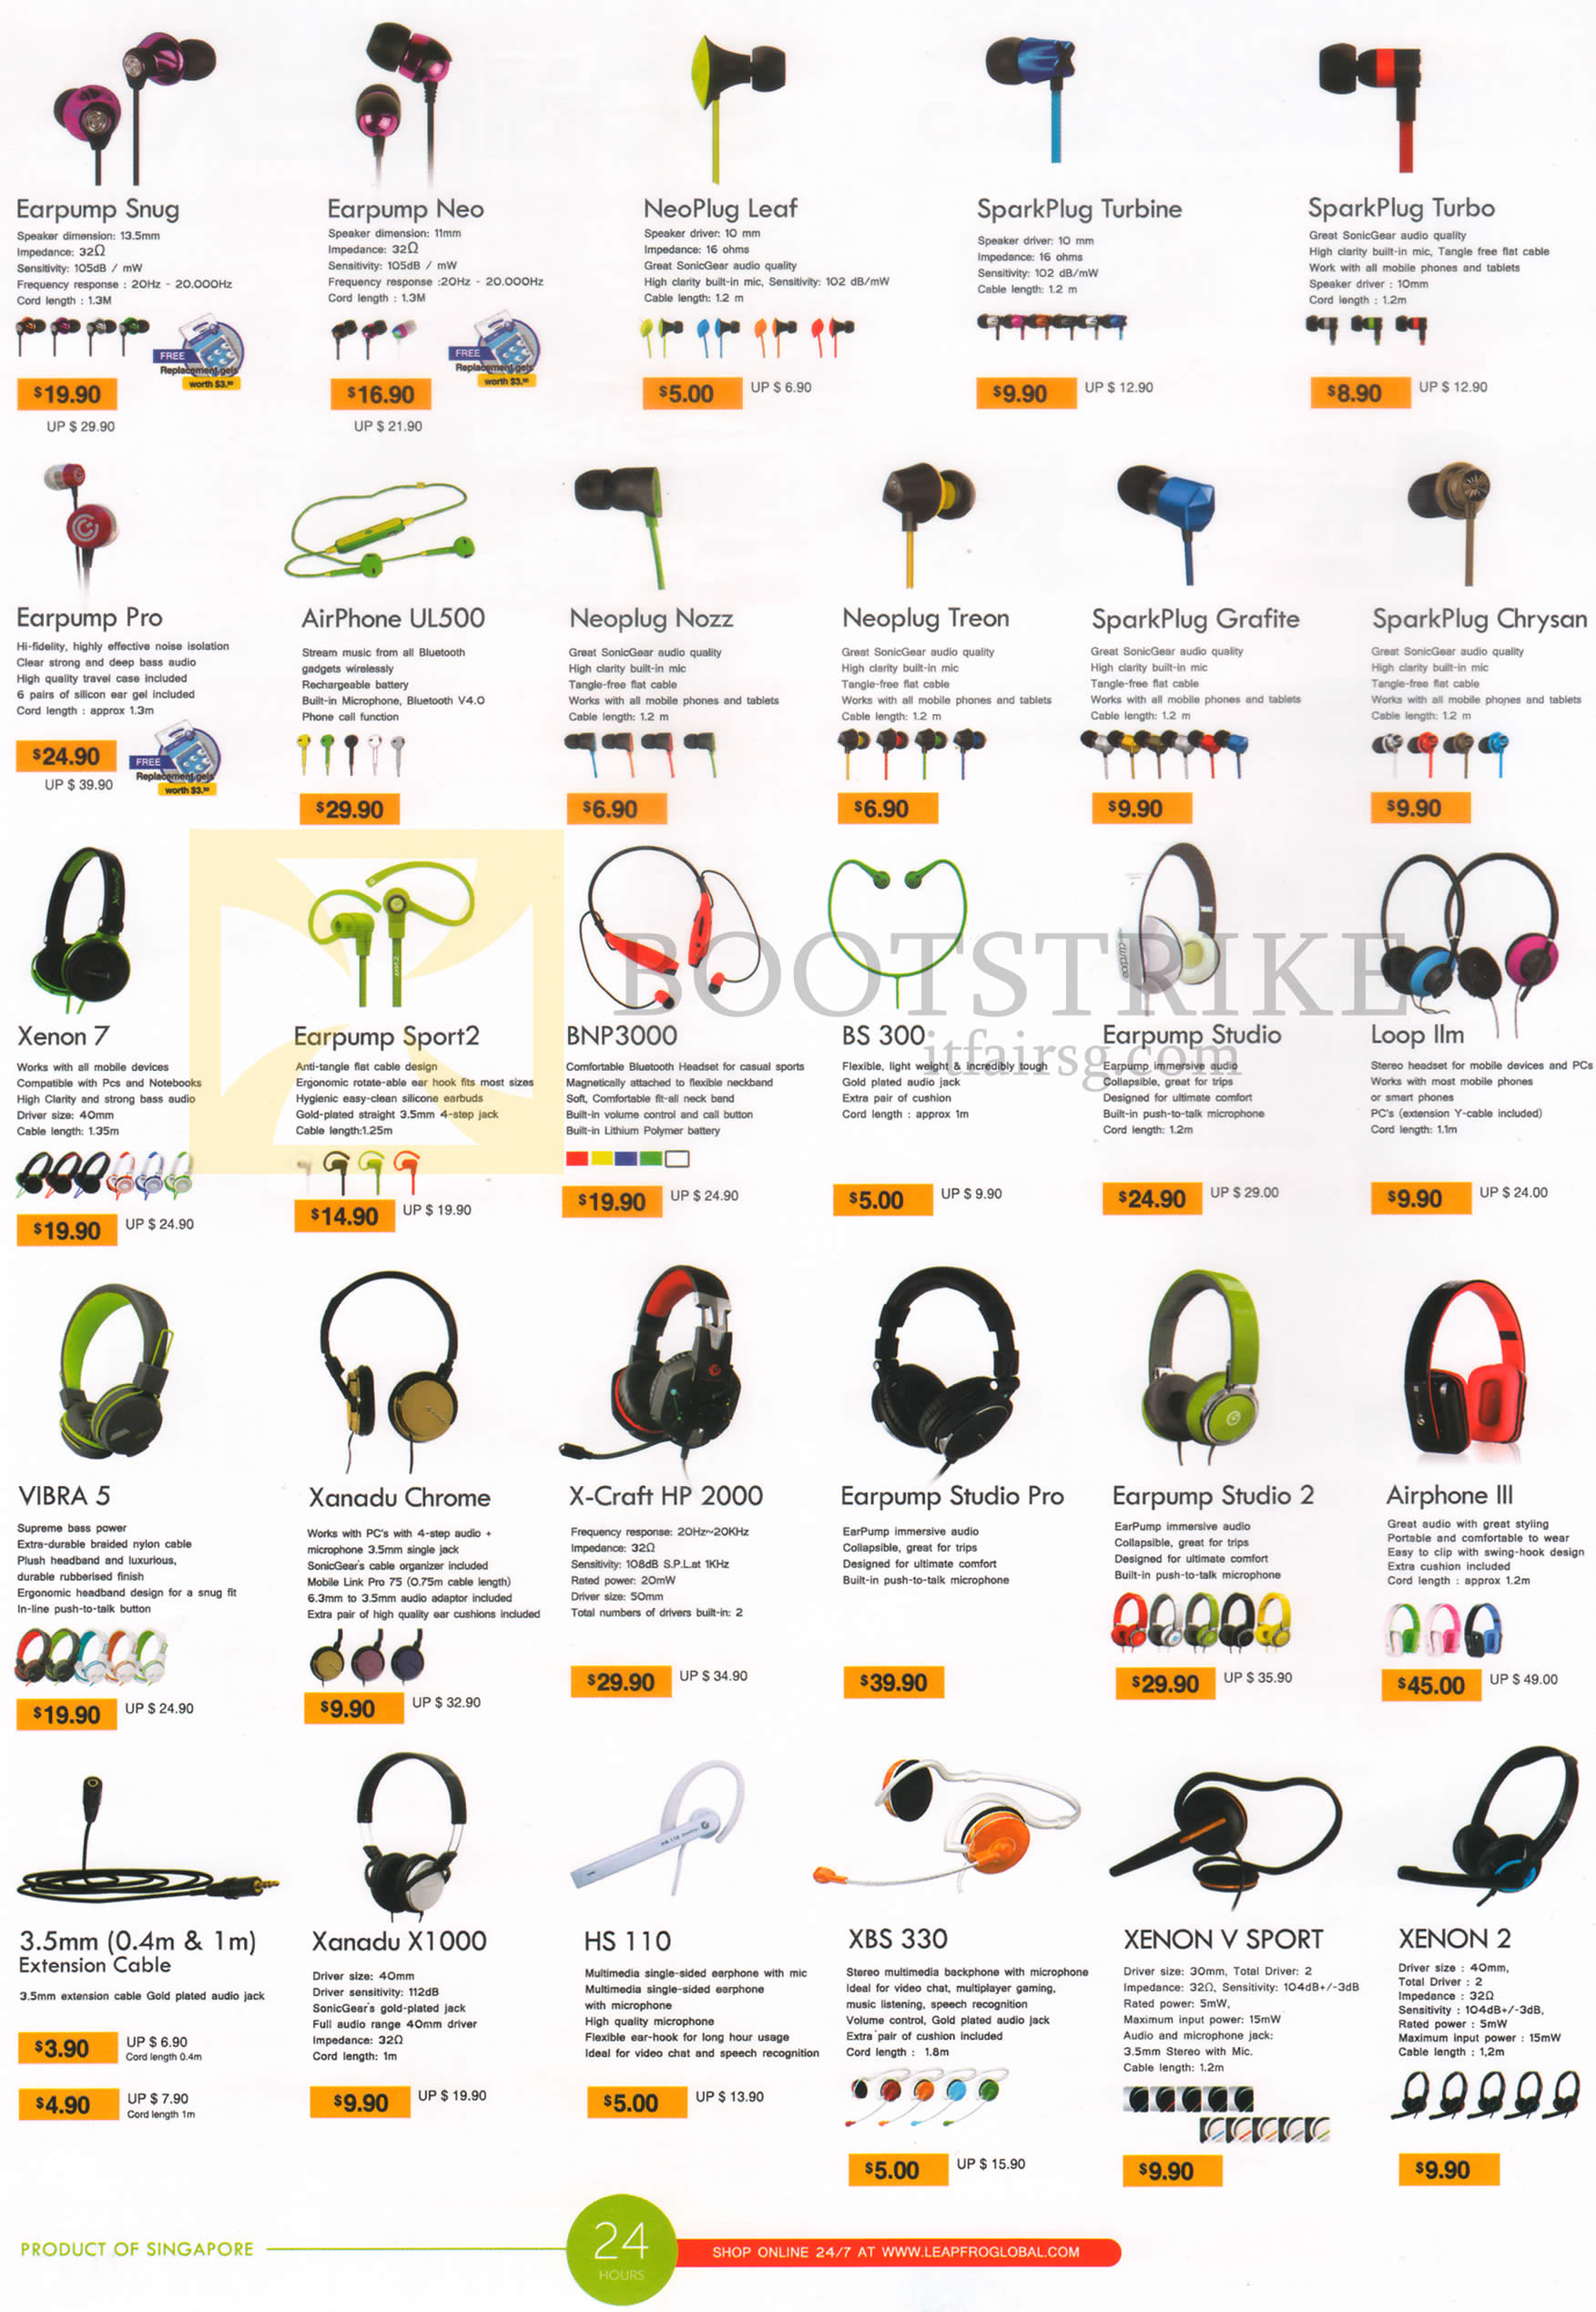 COMEX 2015 price list image brochure of Leapfrog Earphones Headsets Earpump Snug, Neo, Sport 2, Pro, Studio, Studio Pro, NeoPlug Leaf, Nozz, Treon, SparkPlug Turbine, Turbo